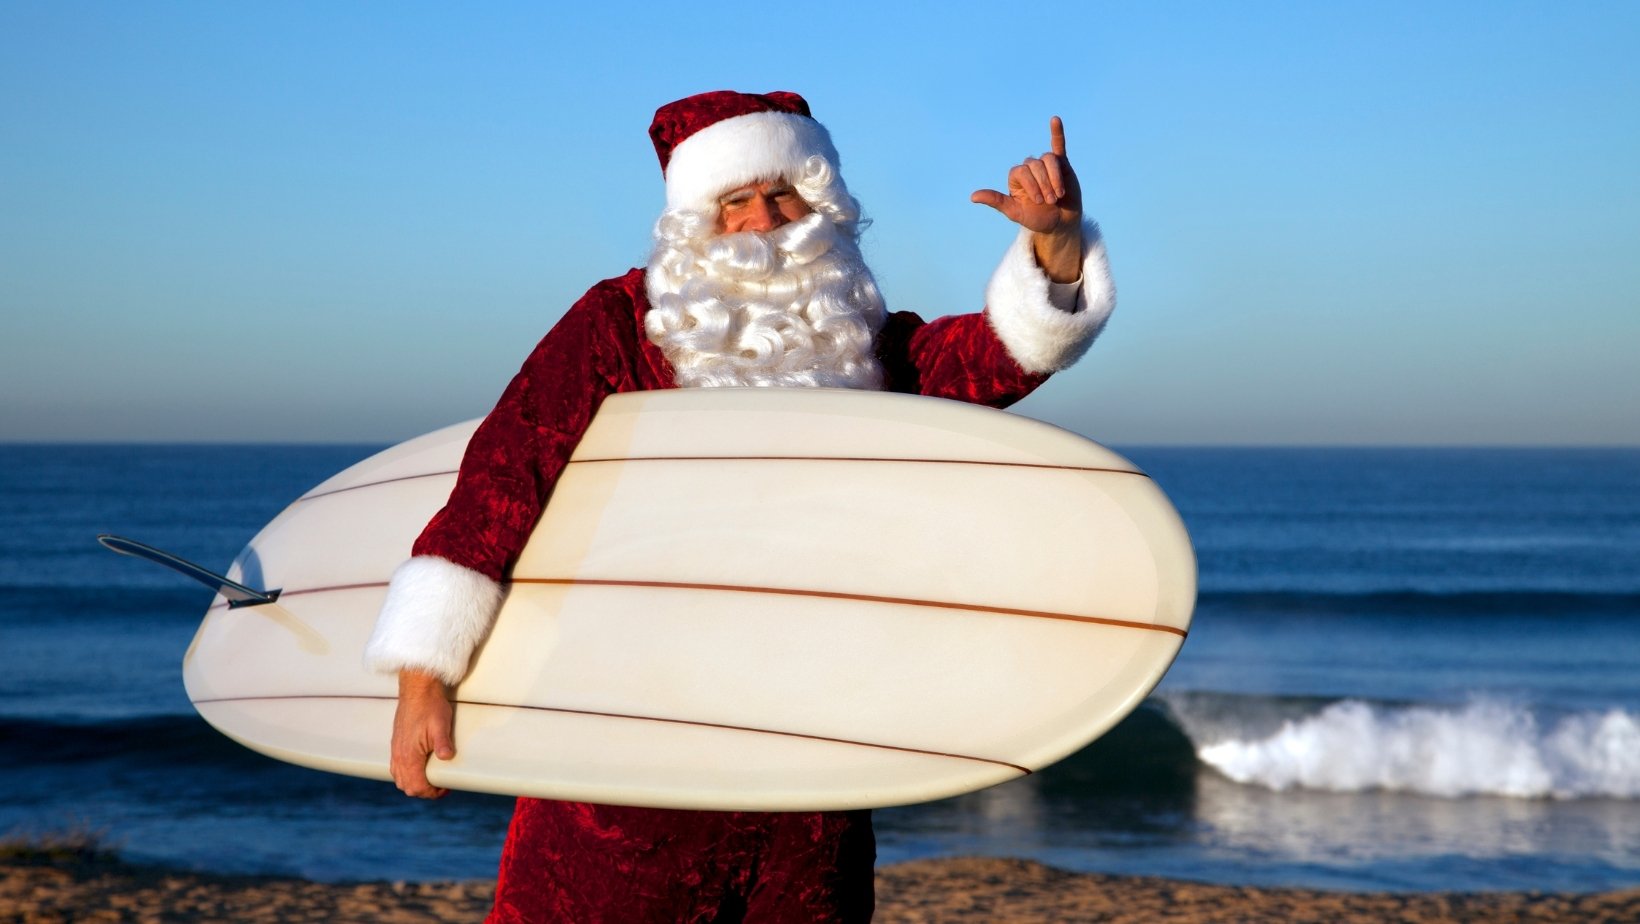 An Australian Christmas with Santa on the beach